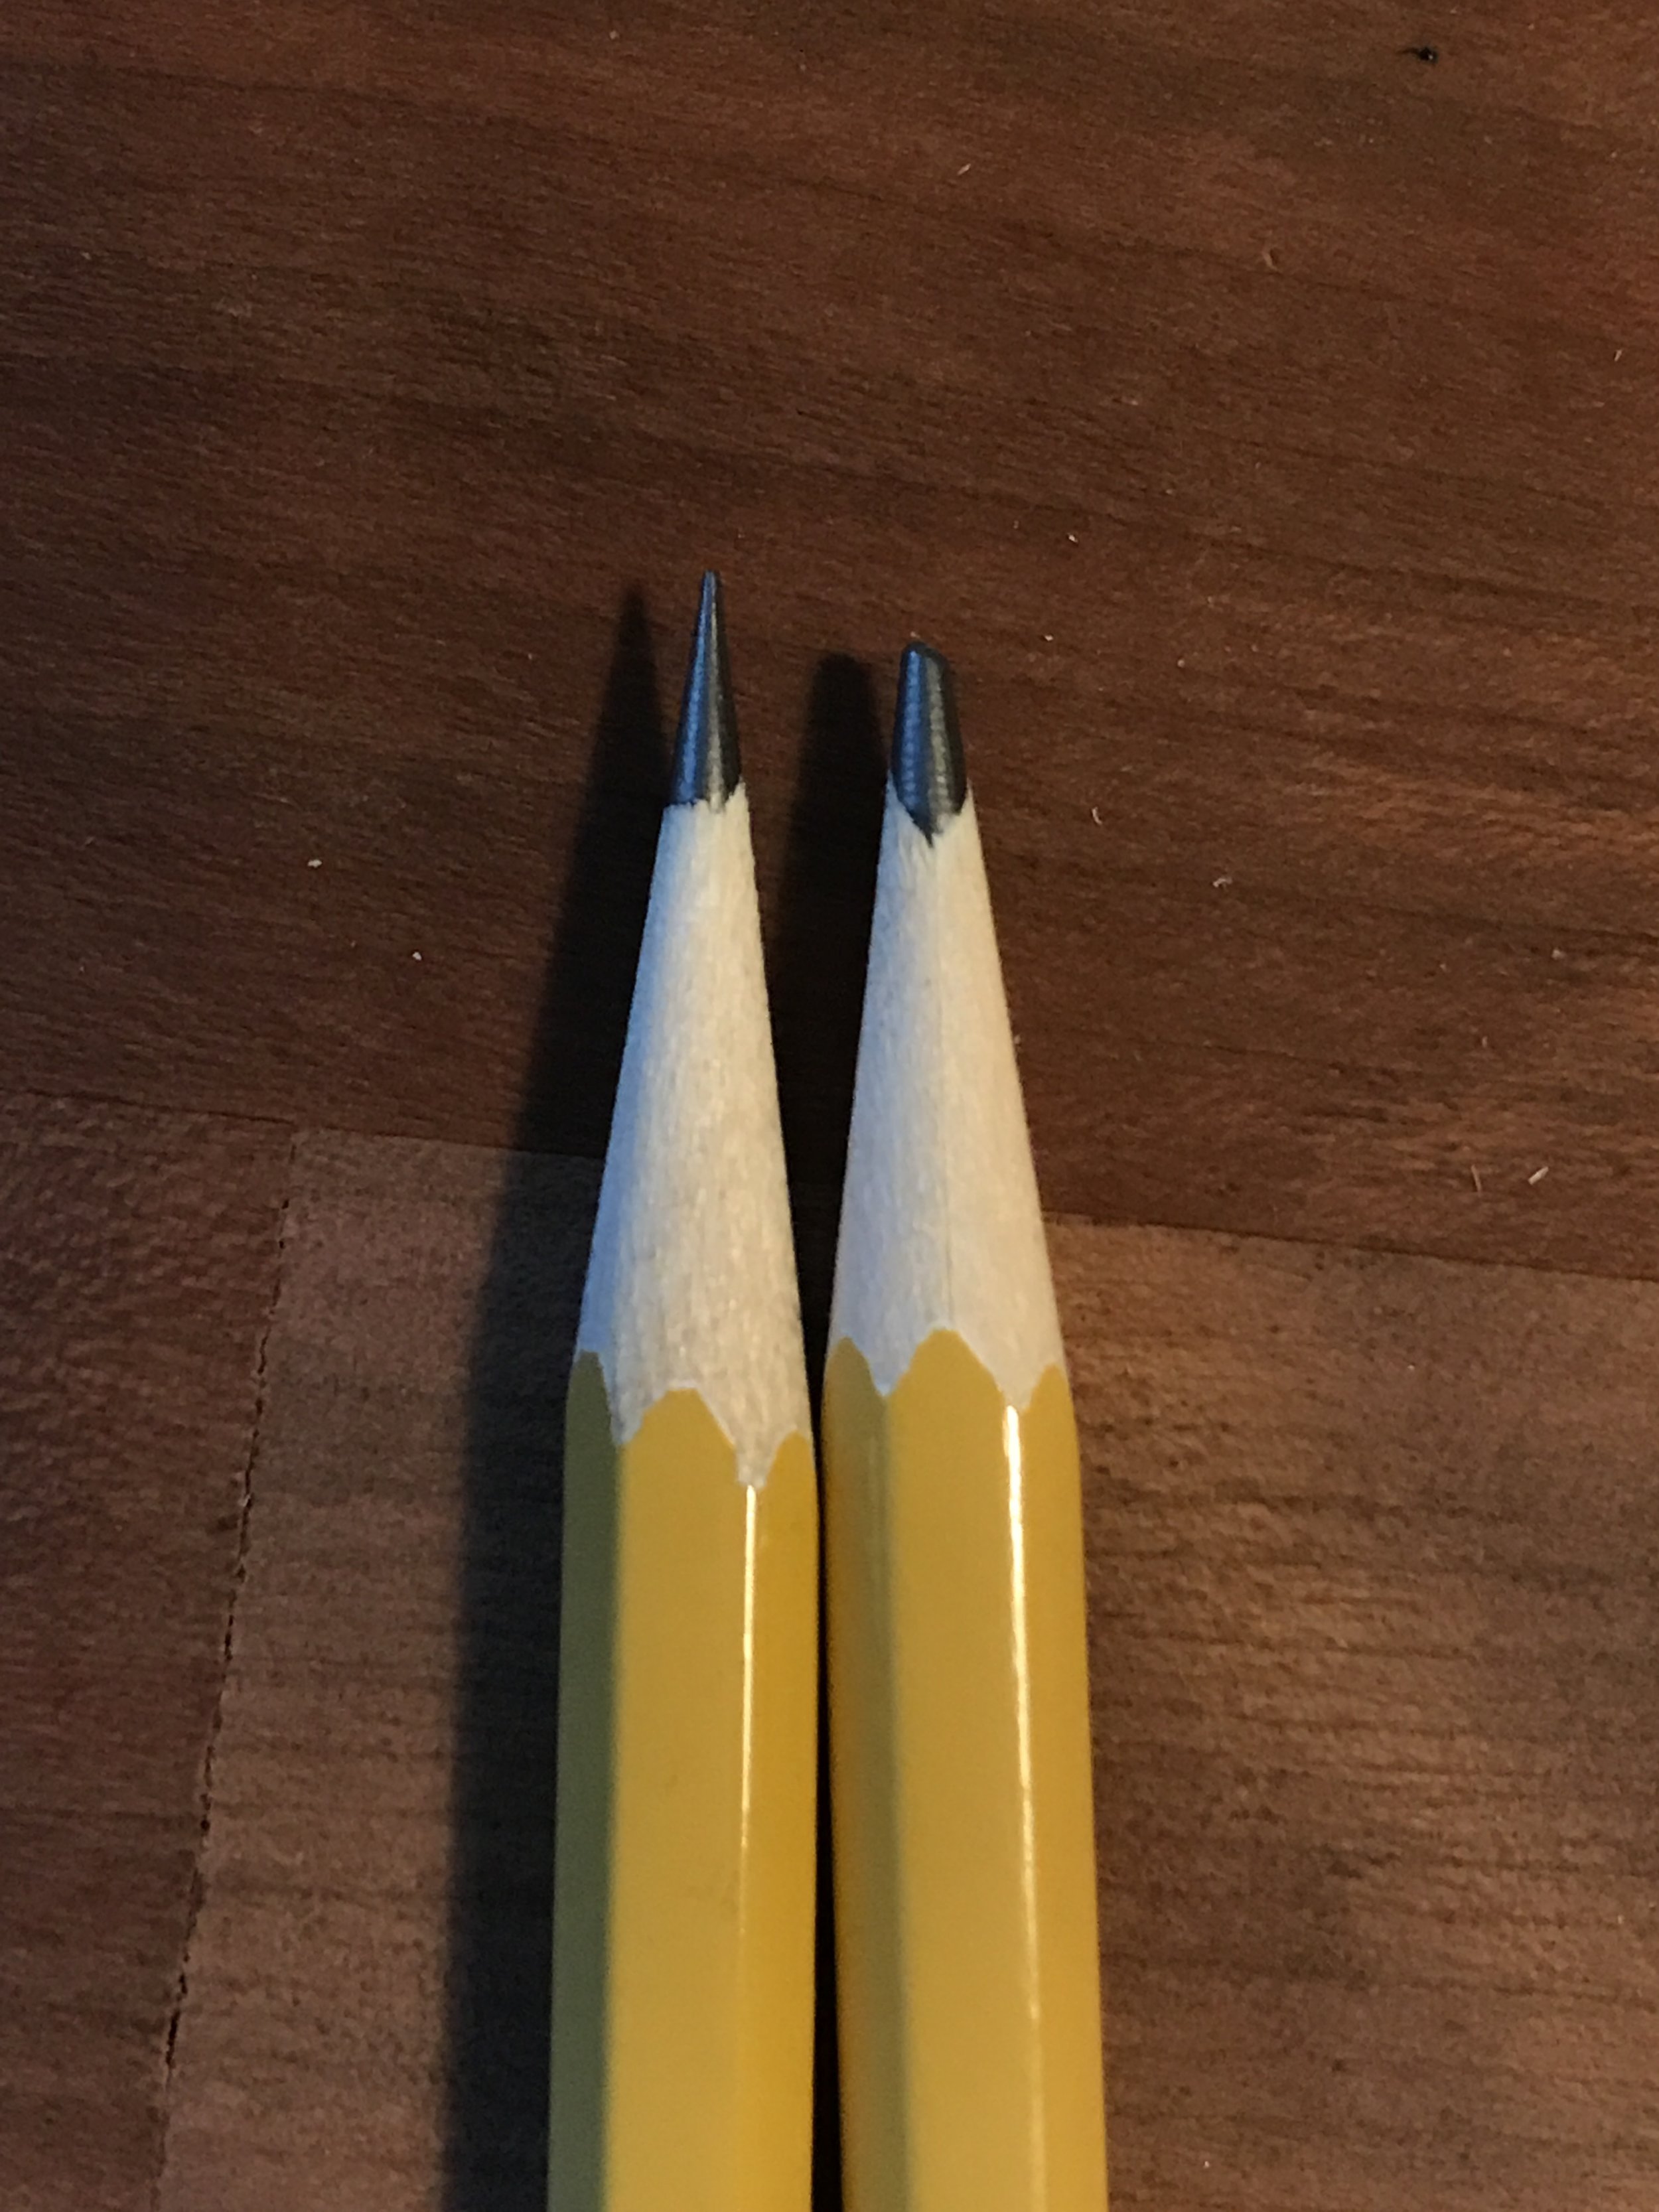 Mitsubishi Pencil Hand Crank Wooden Pencil Sharpener Red KH20.15 